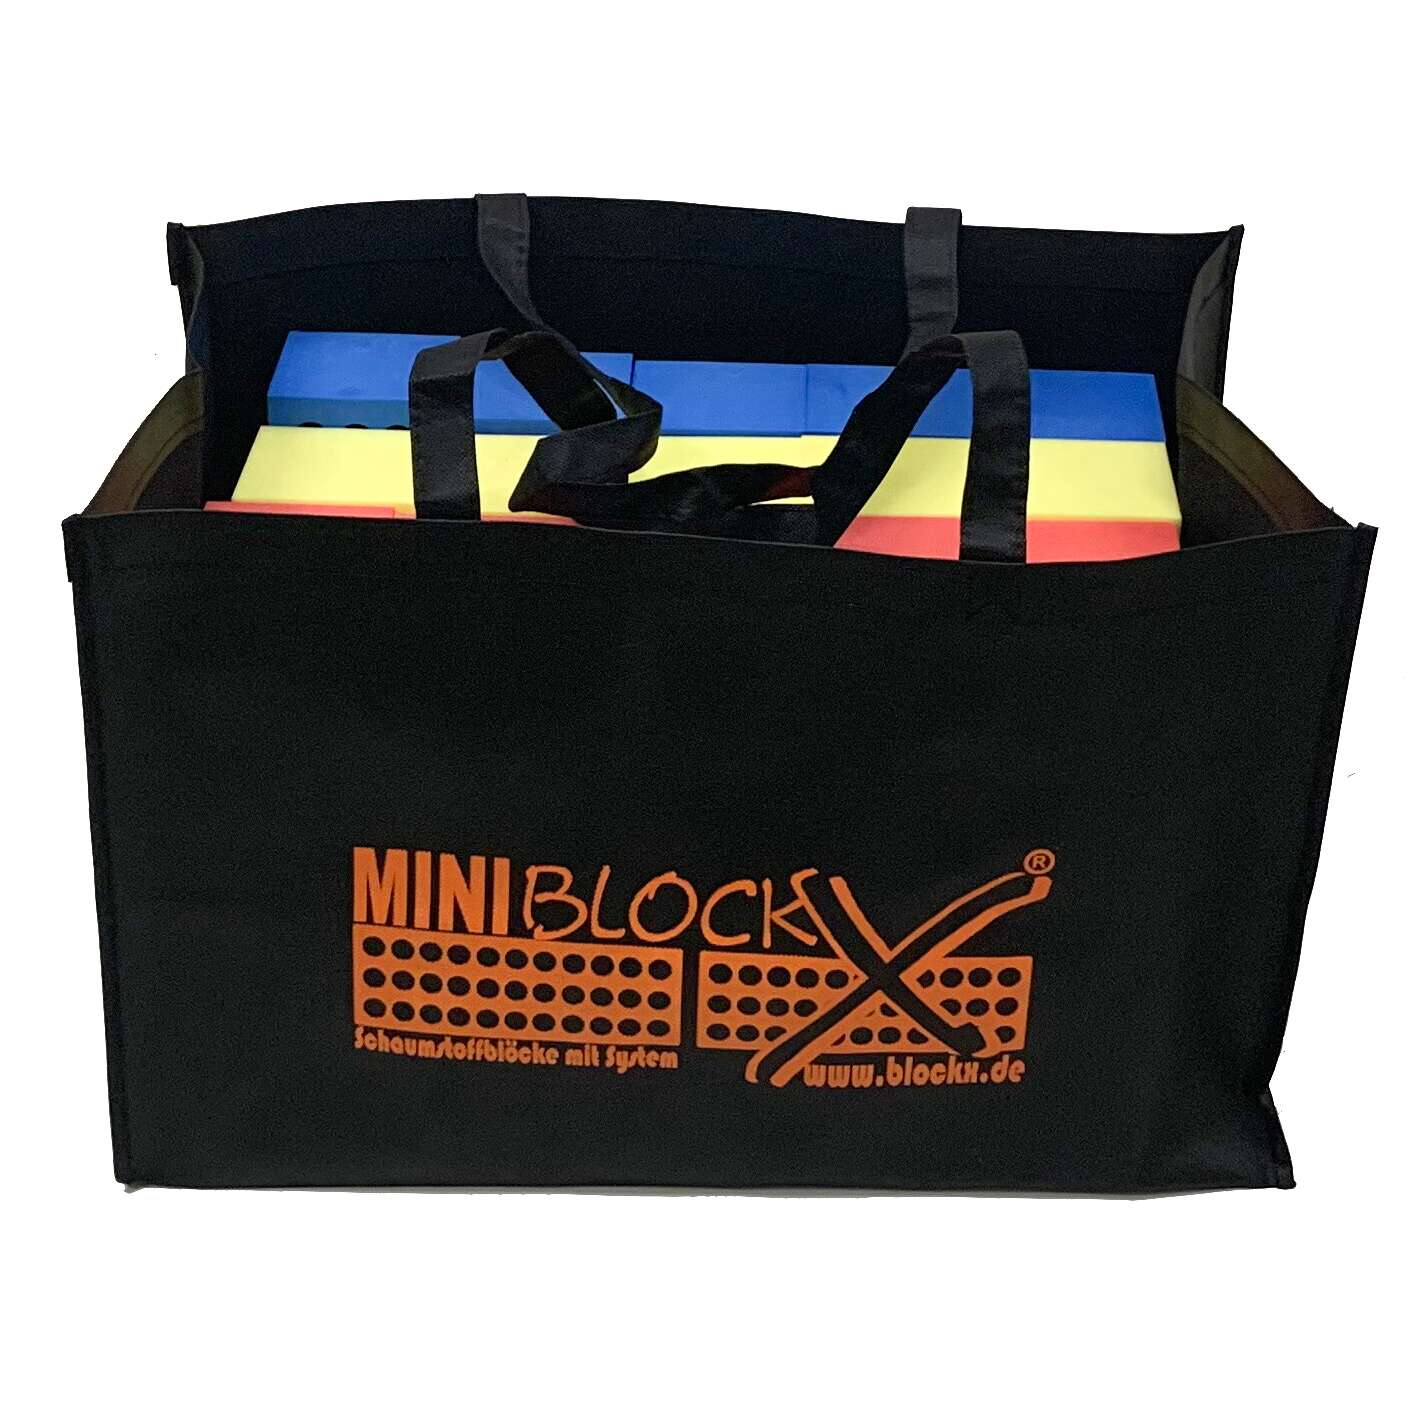 BlockX Aufbewahrungstasche für Schaumstoffblöcke "MiniBlockX" von BlockX